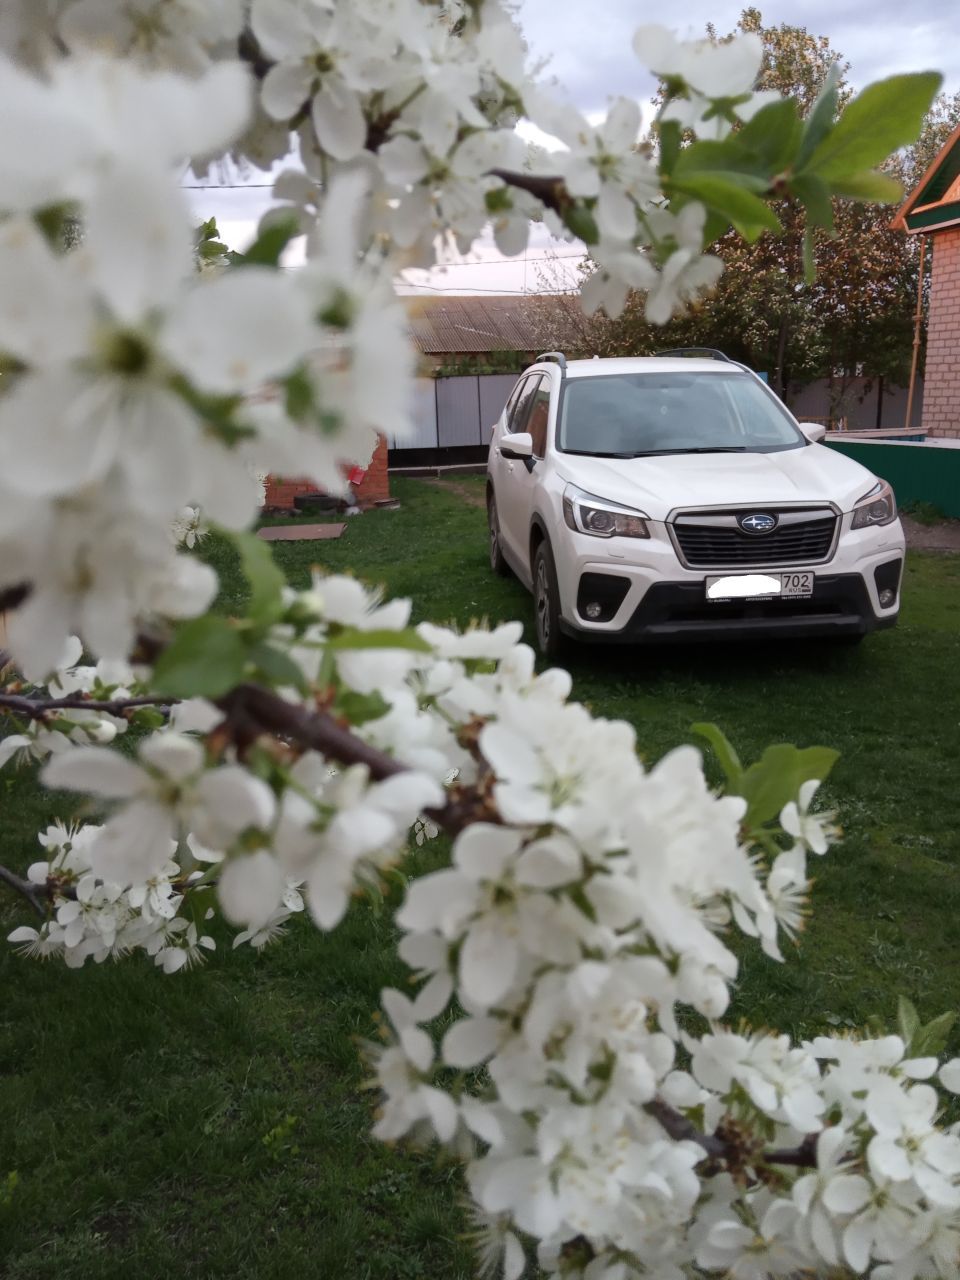 Subaru Forester 2019, 2 литра, Доброго времени суток, 4вд, Уфа, левый руль